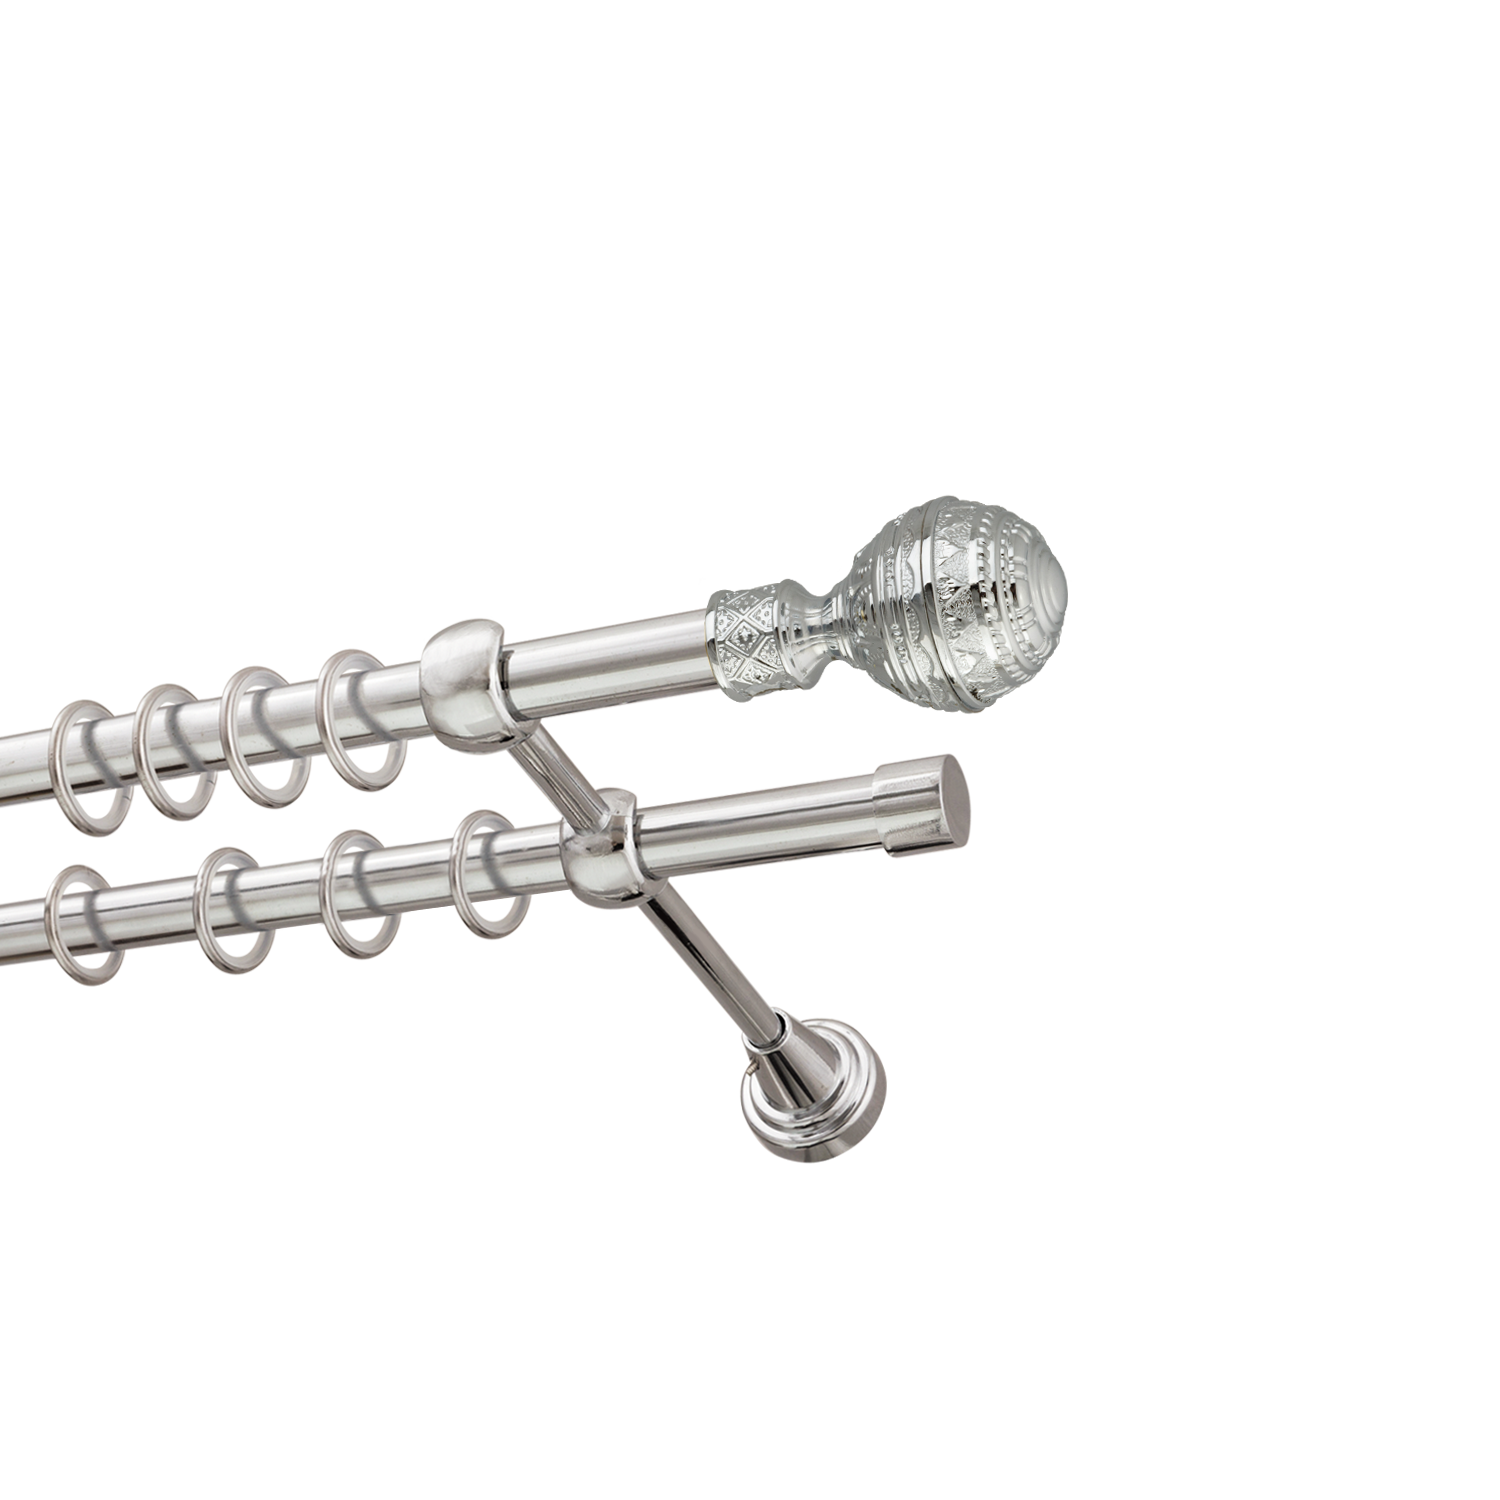 Металлический карниз для штор Роял, двухрядный 16/16 мм, серебро, гладкая штанга, длина 160 см - фото Wikidecor.ru